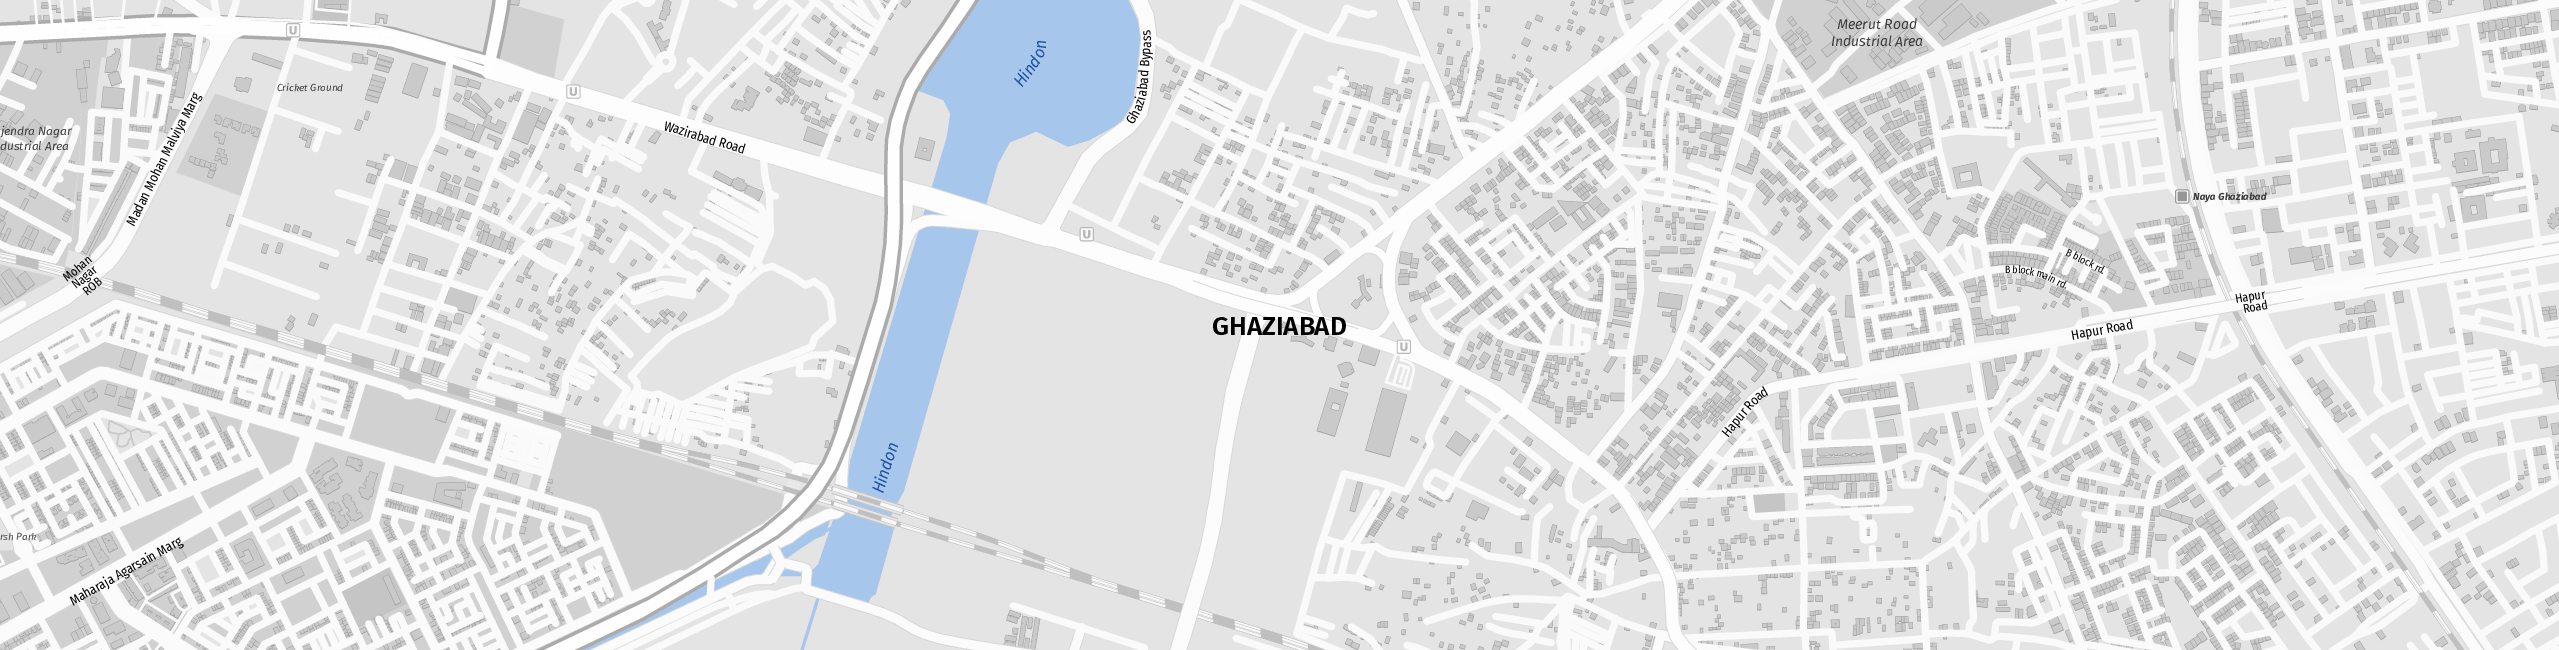 Stadtplan Ghaziabad zum Downloaden.